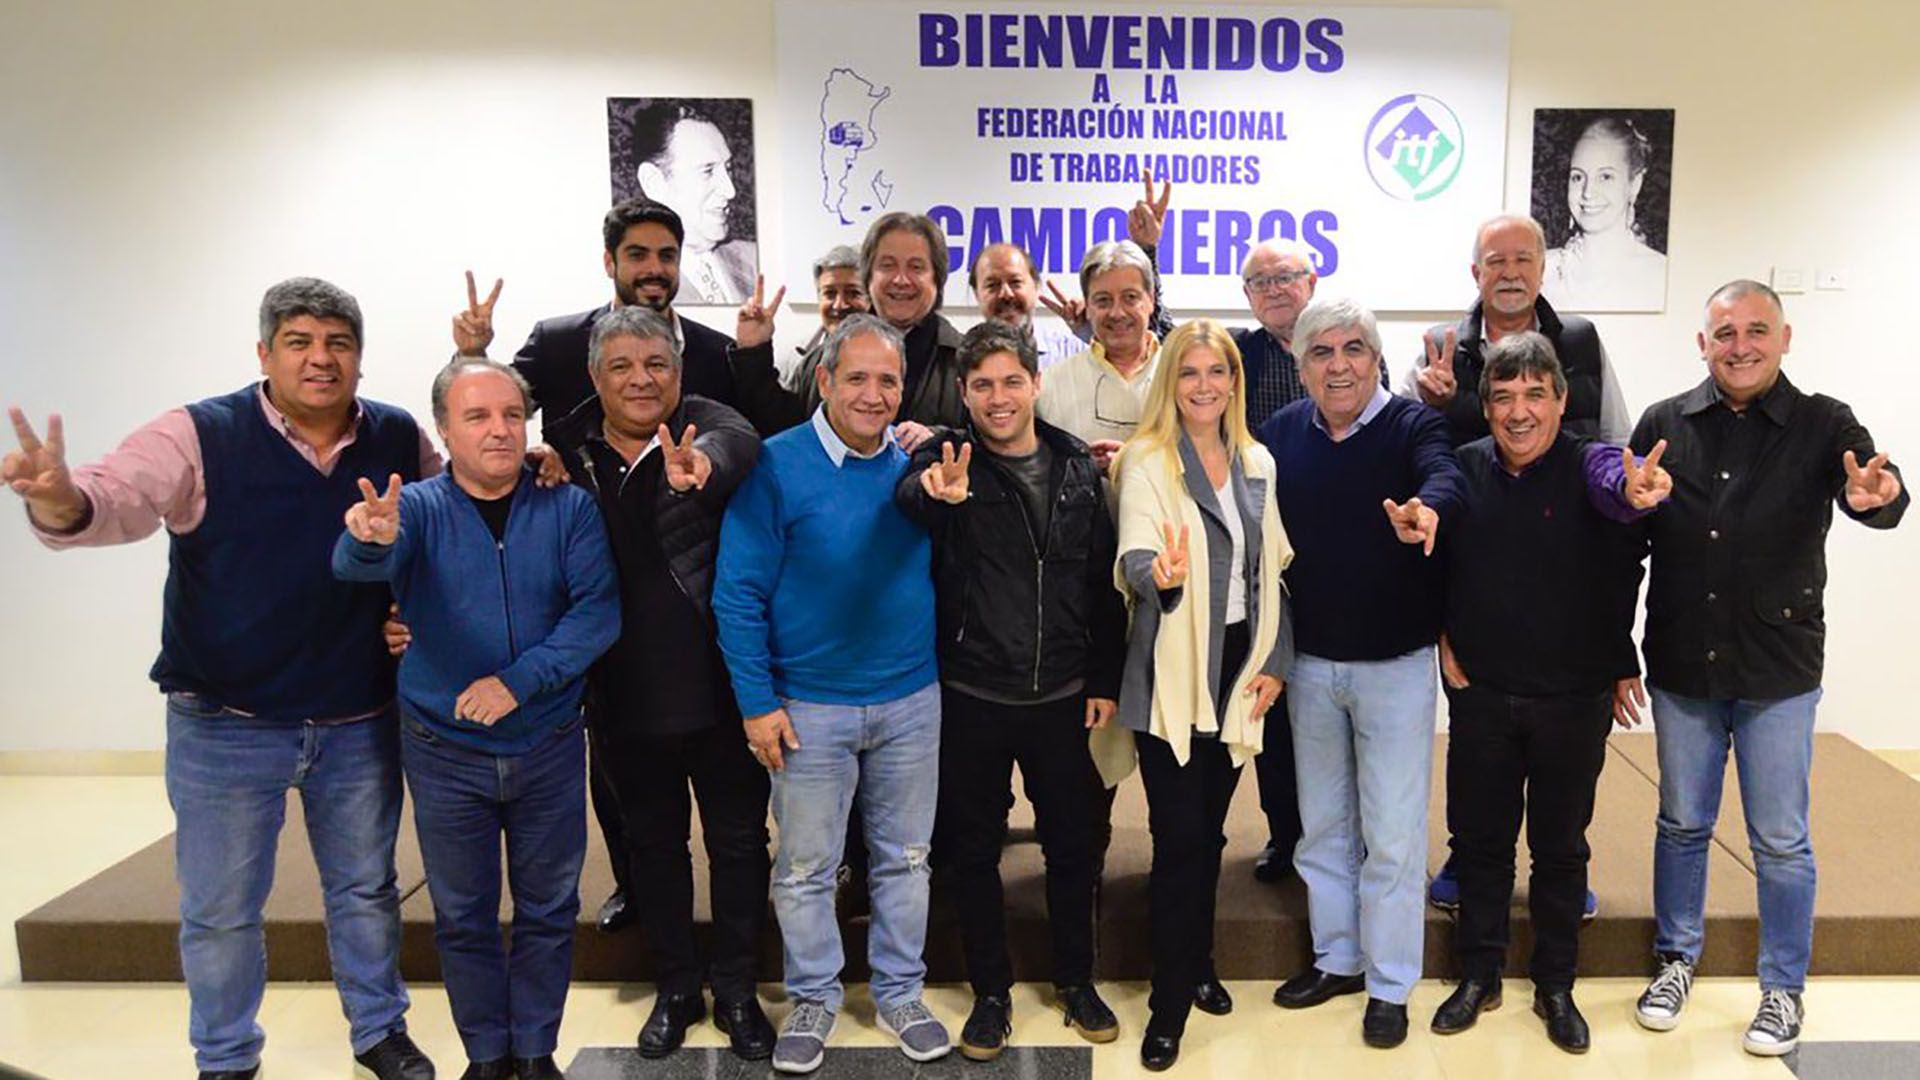 El candidato a gobernador bonaerense, Axel Kicillof y su vice Verónica Magario, junto a Hugo Moyano y otros sindicalistas. (@cgt_camioneros)